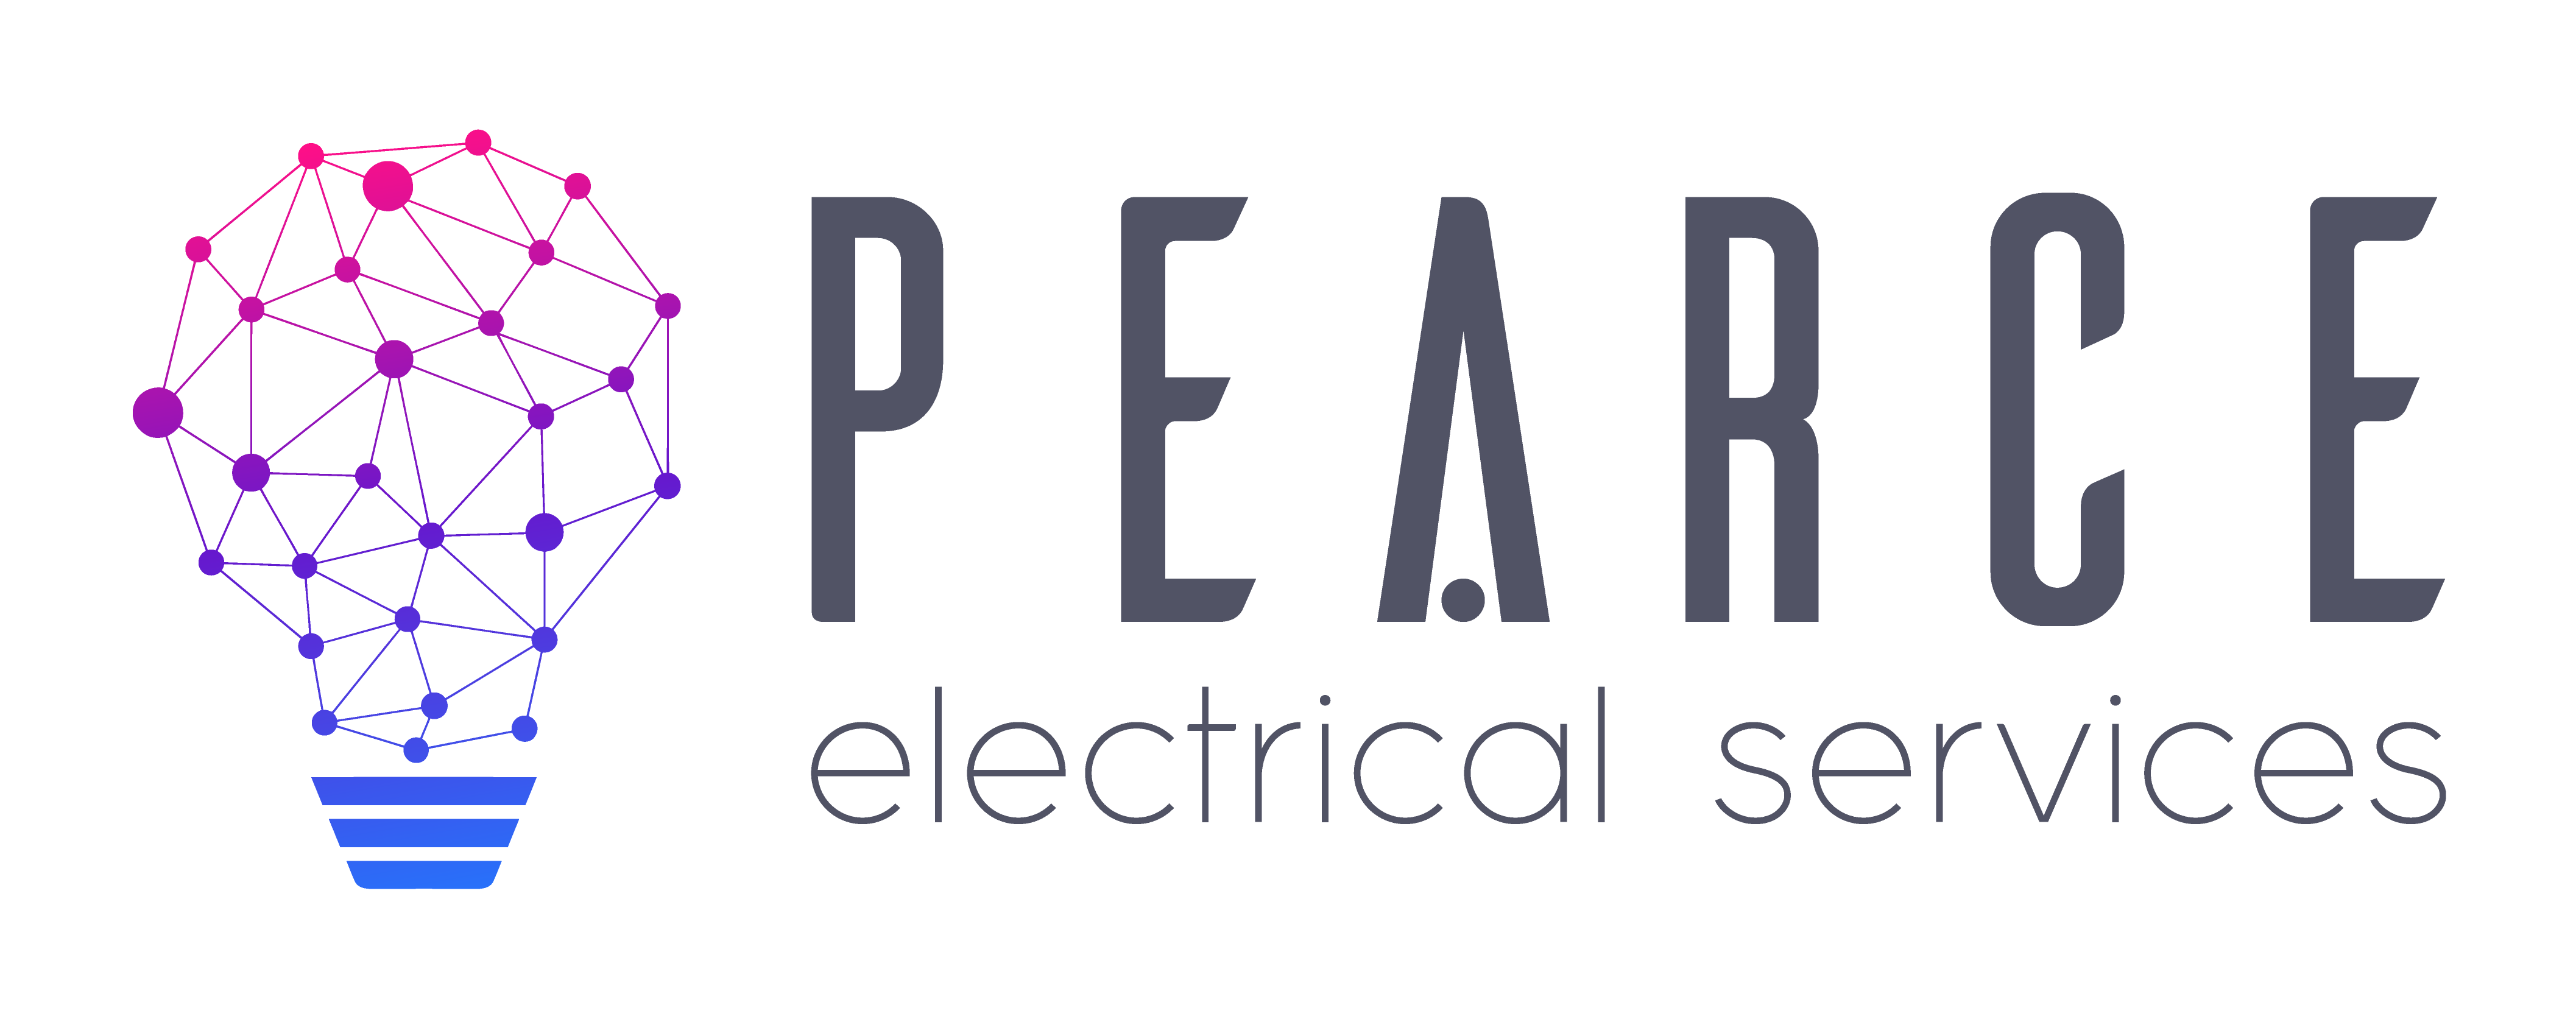 logo for Pearce Development Group